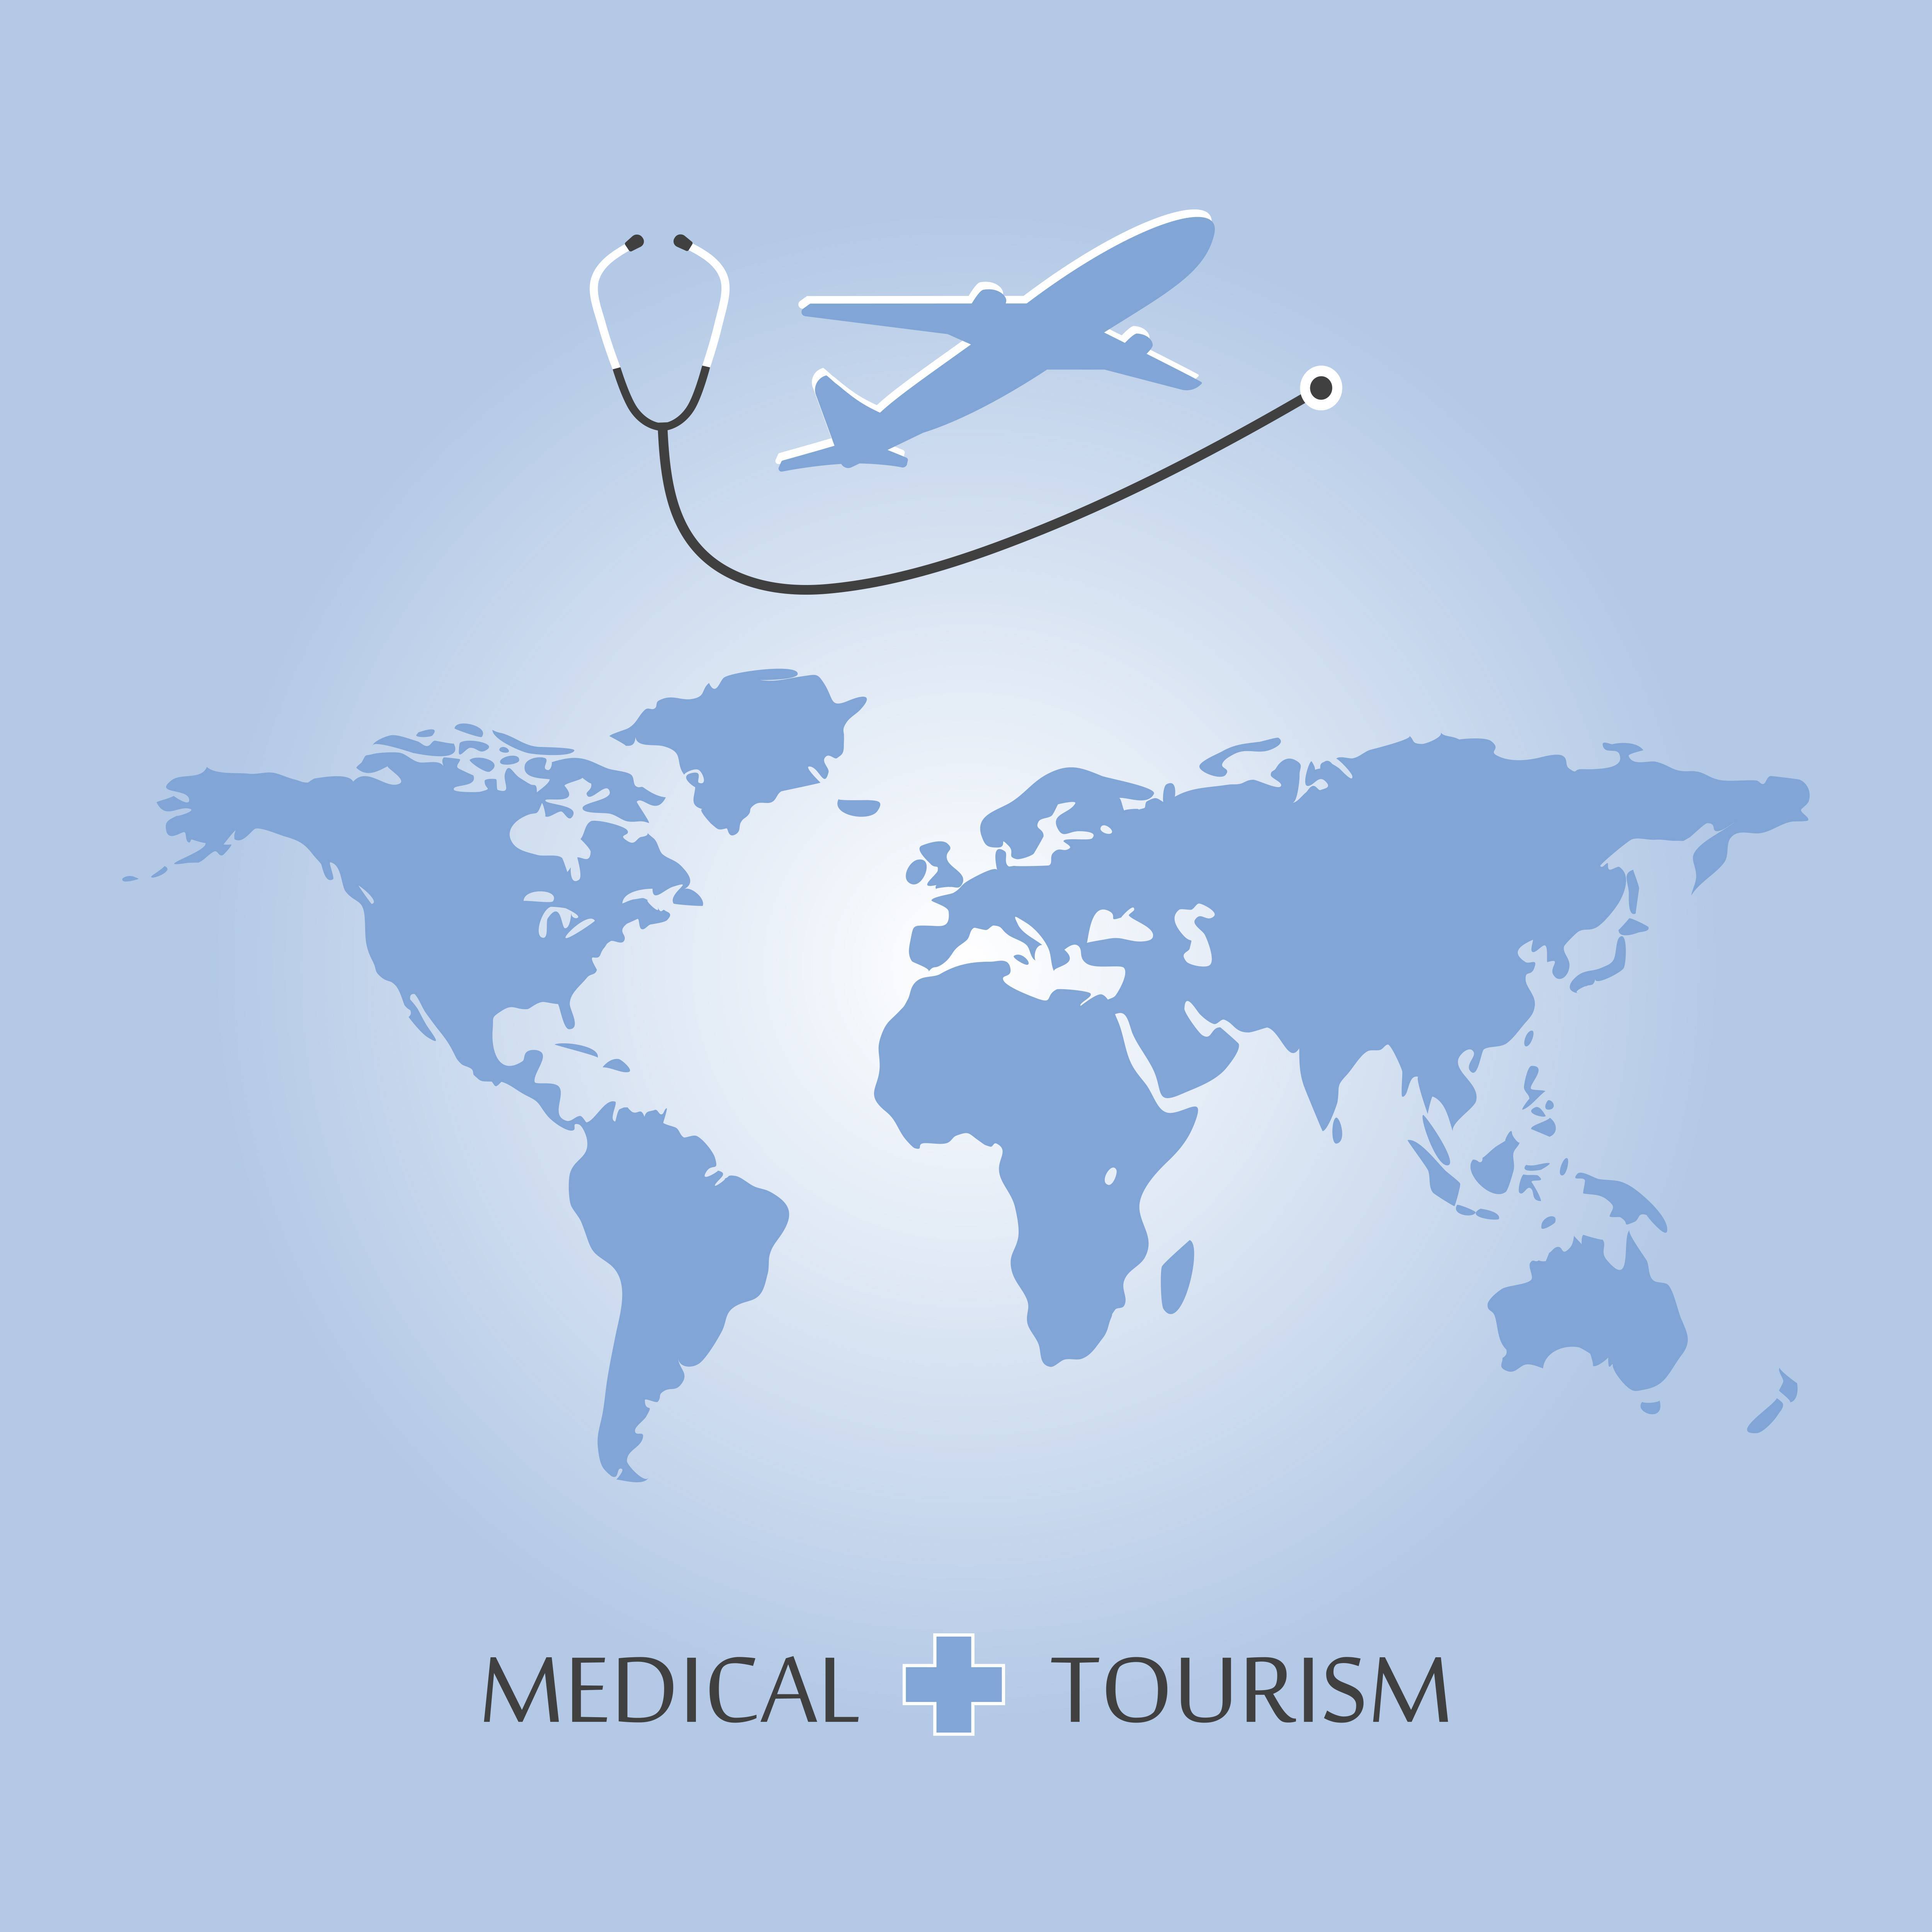 tourisme médical